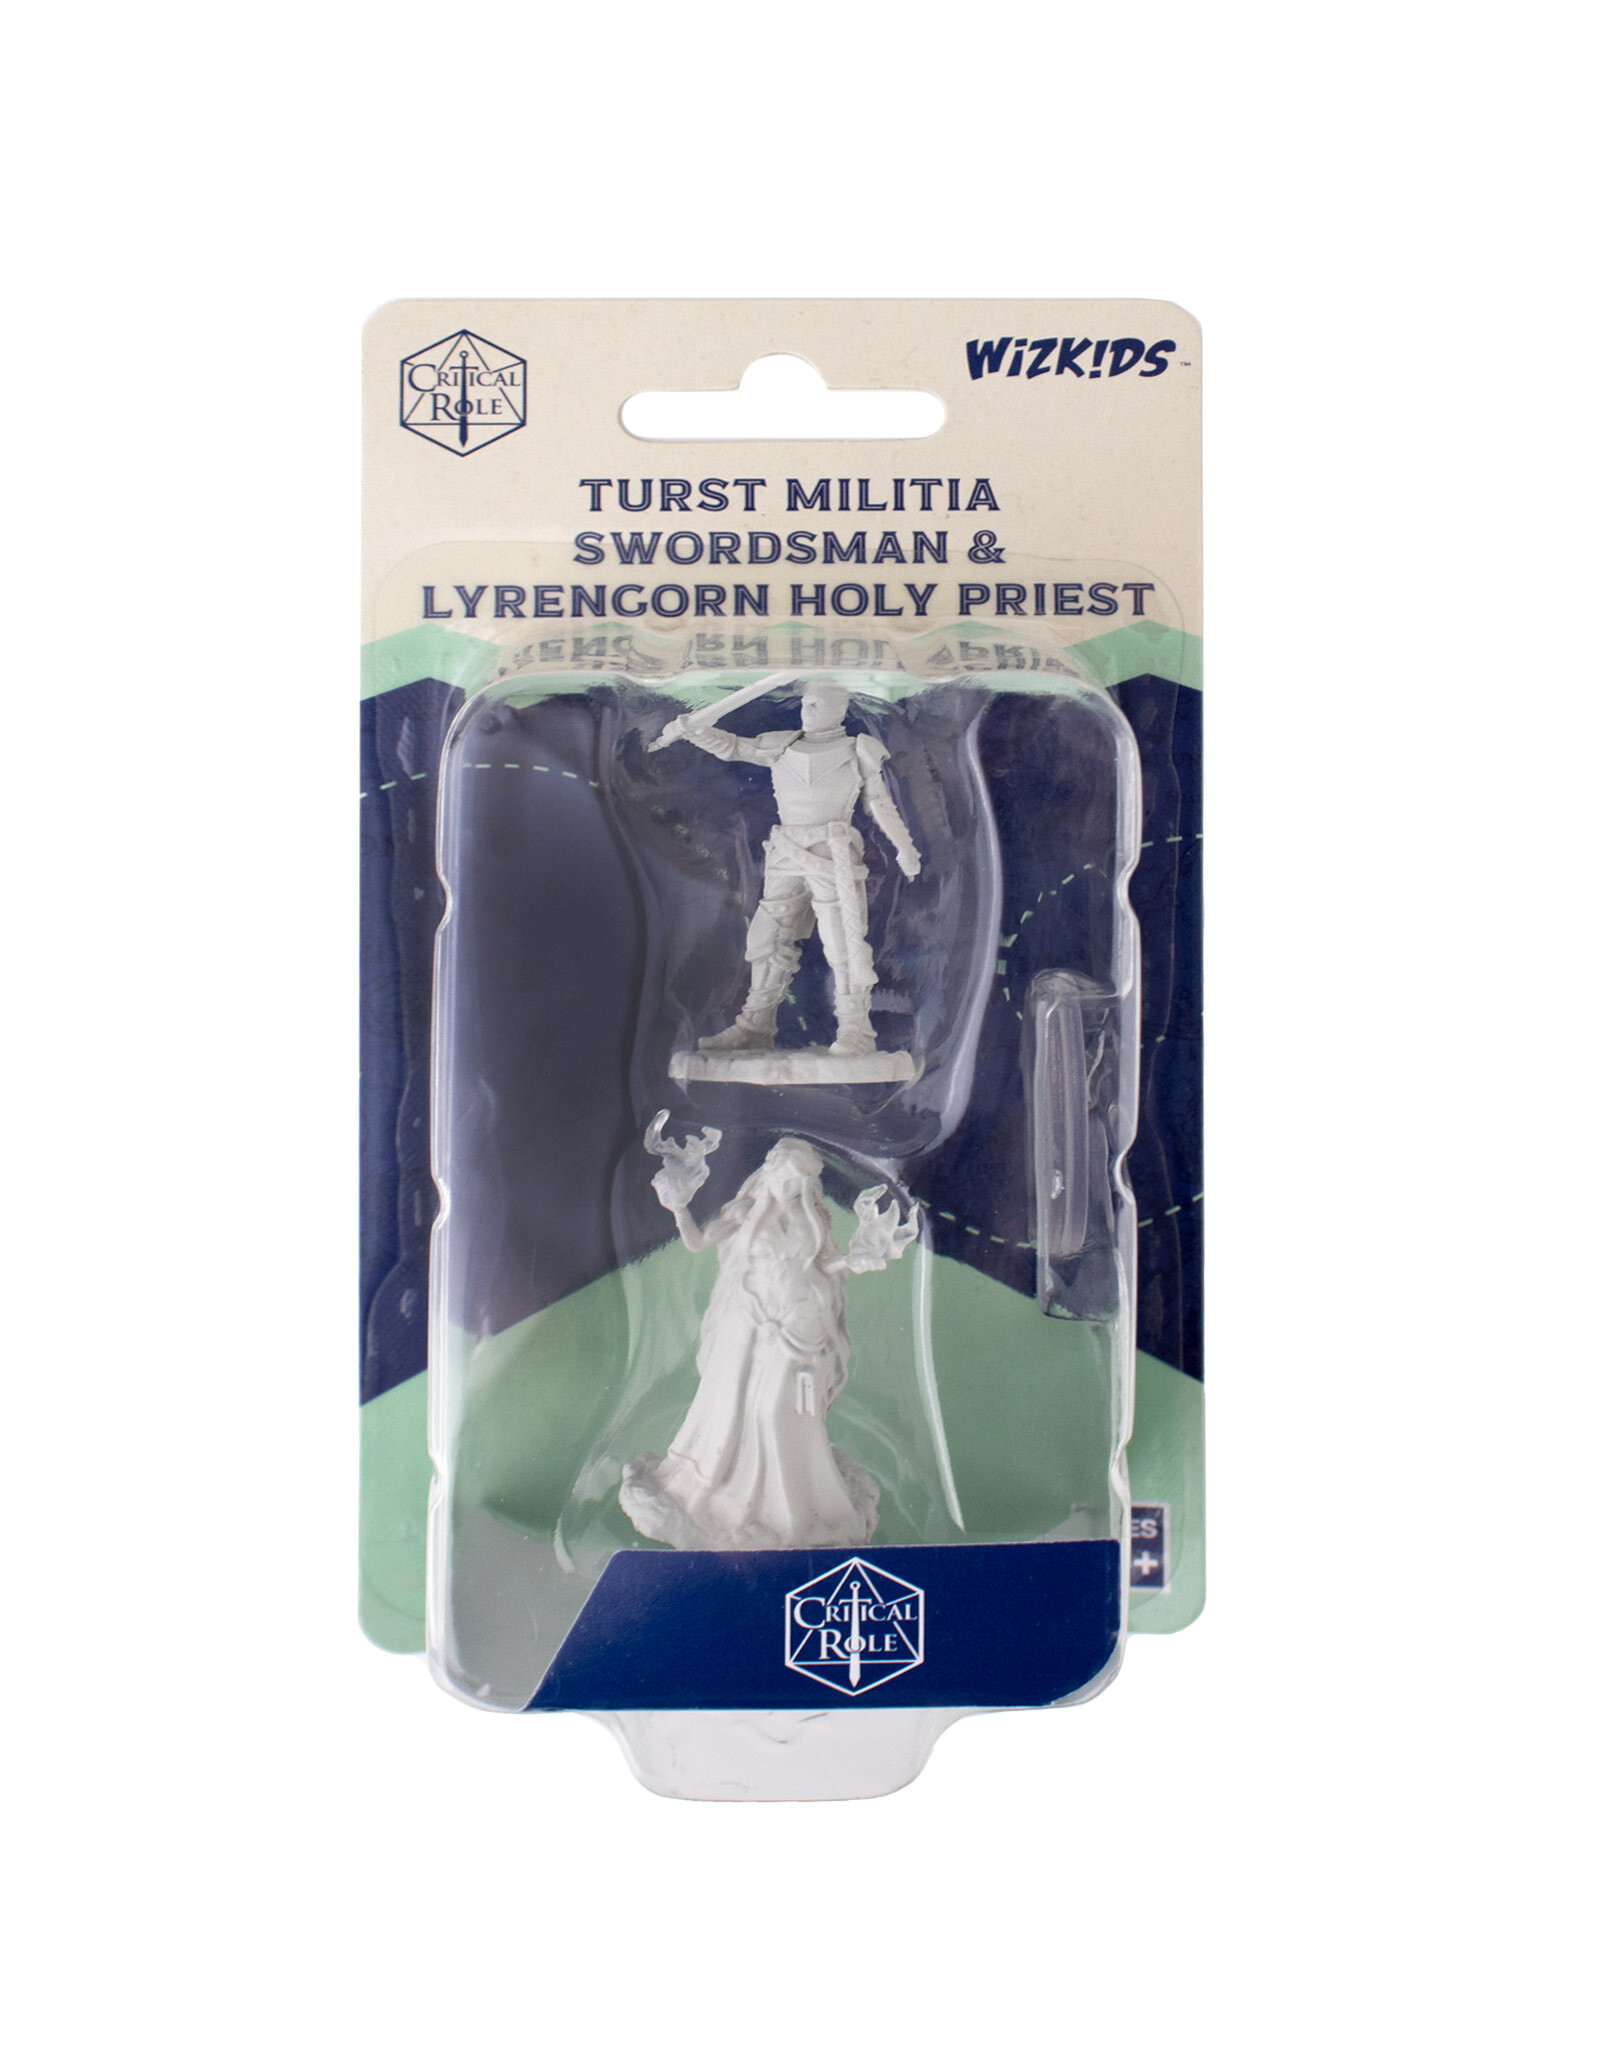 Critical Role Unpainted Miniatures: W02 Turst Militia Swordsman & Lyrengorn Holy Priest